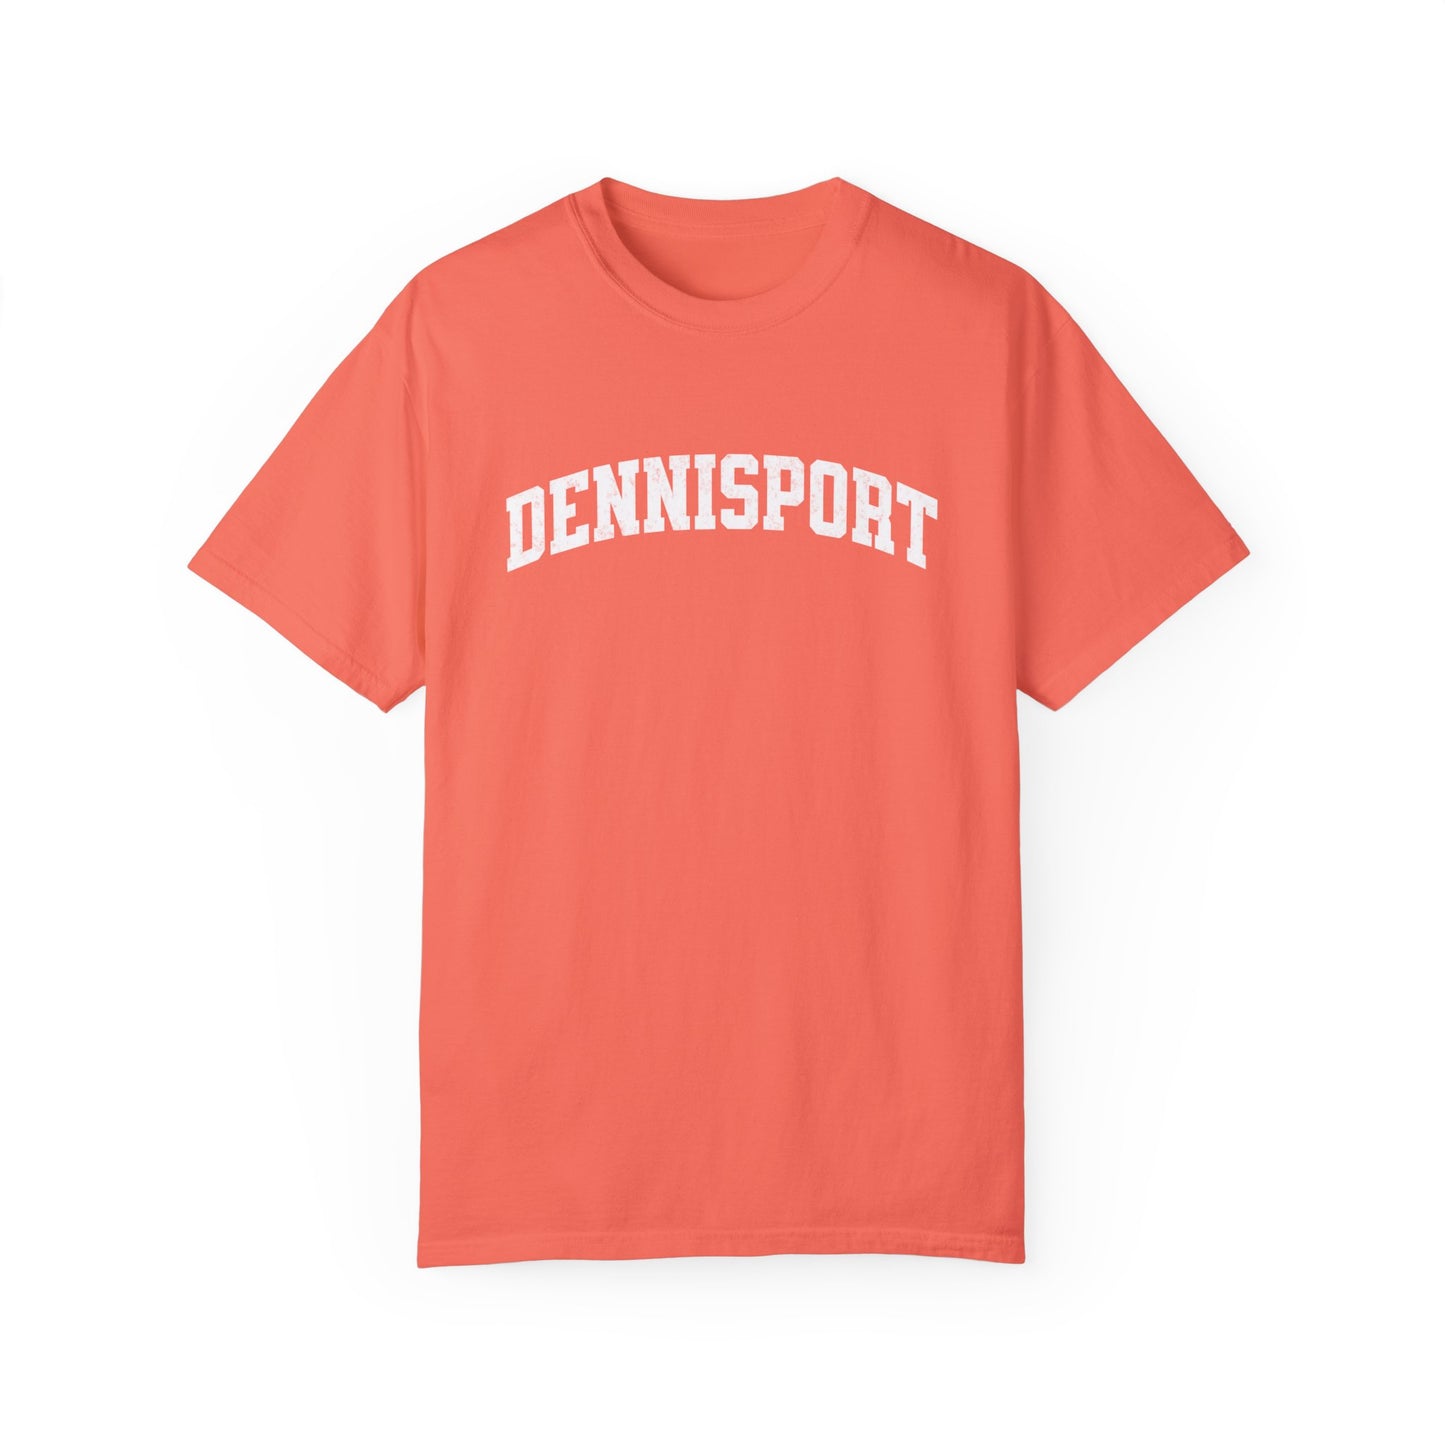 Dennisport Garment-Dyed T-shirt